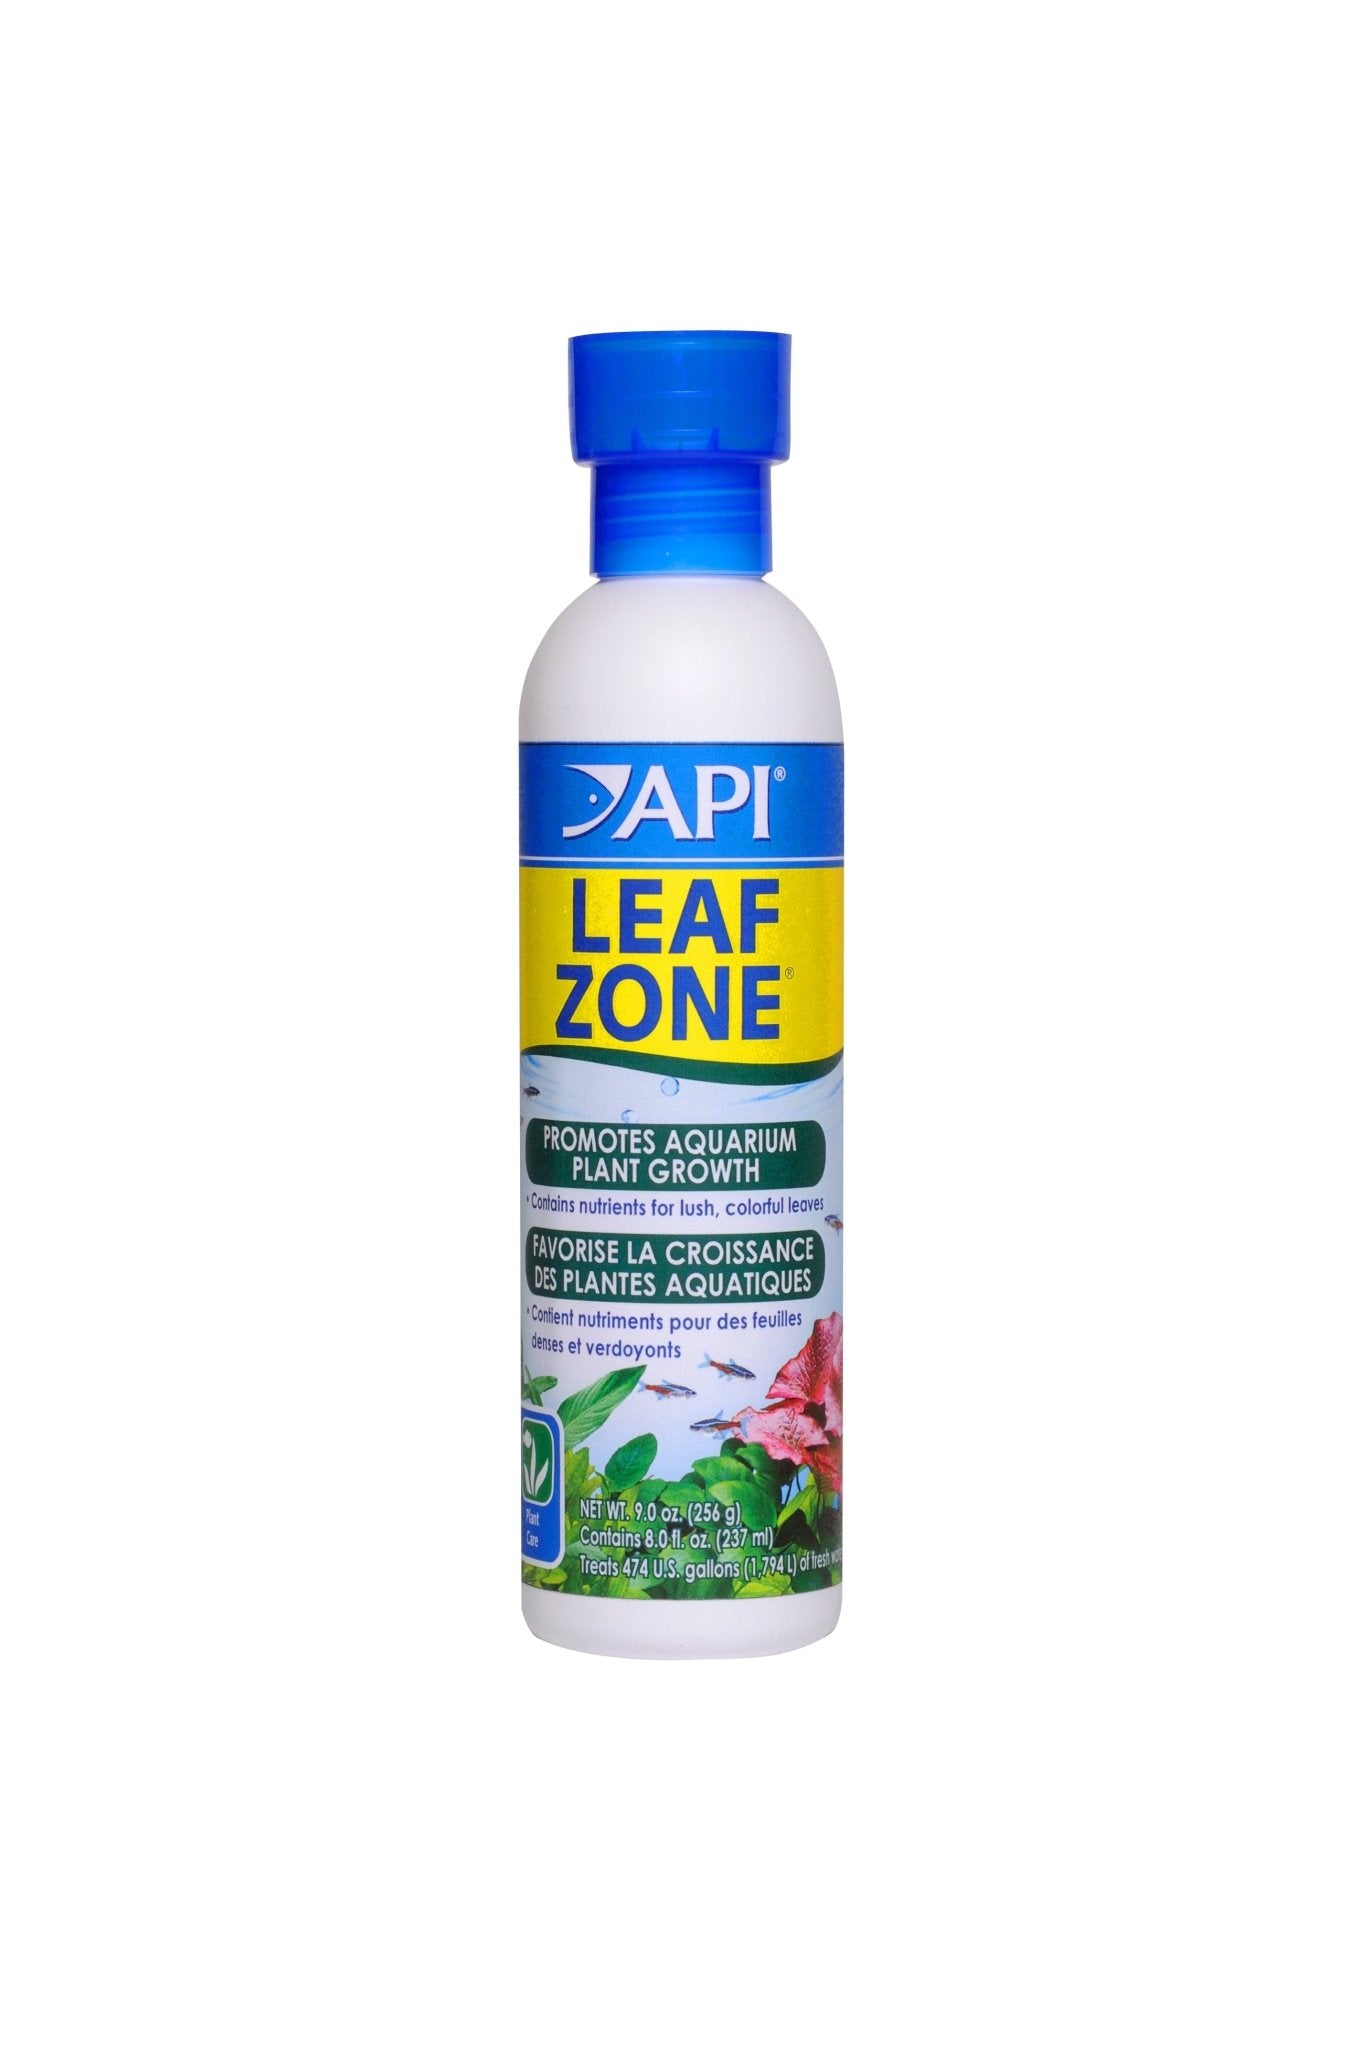 API Leaf Zone 237ml - Woonona Petfood & Produce